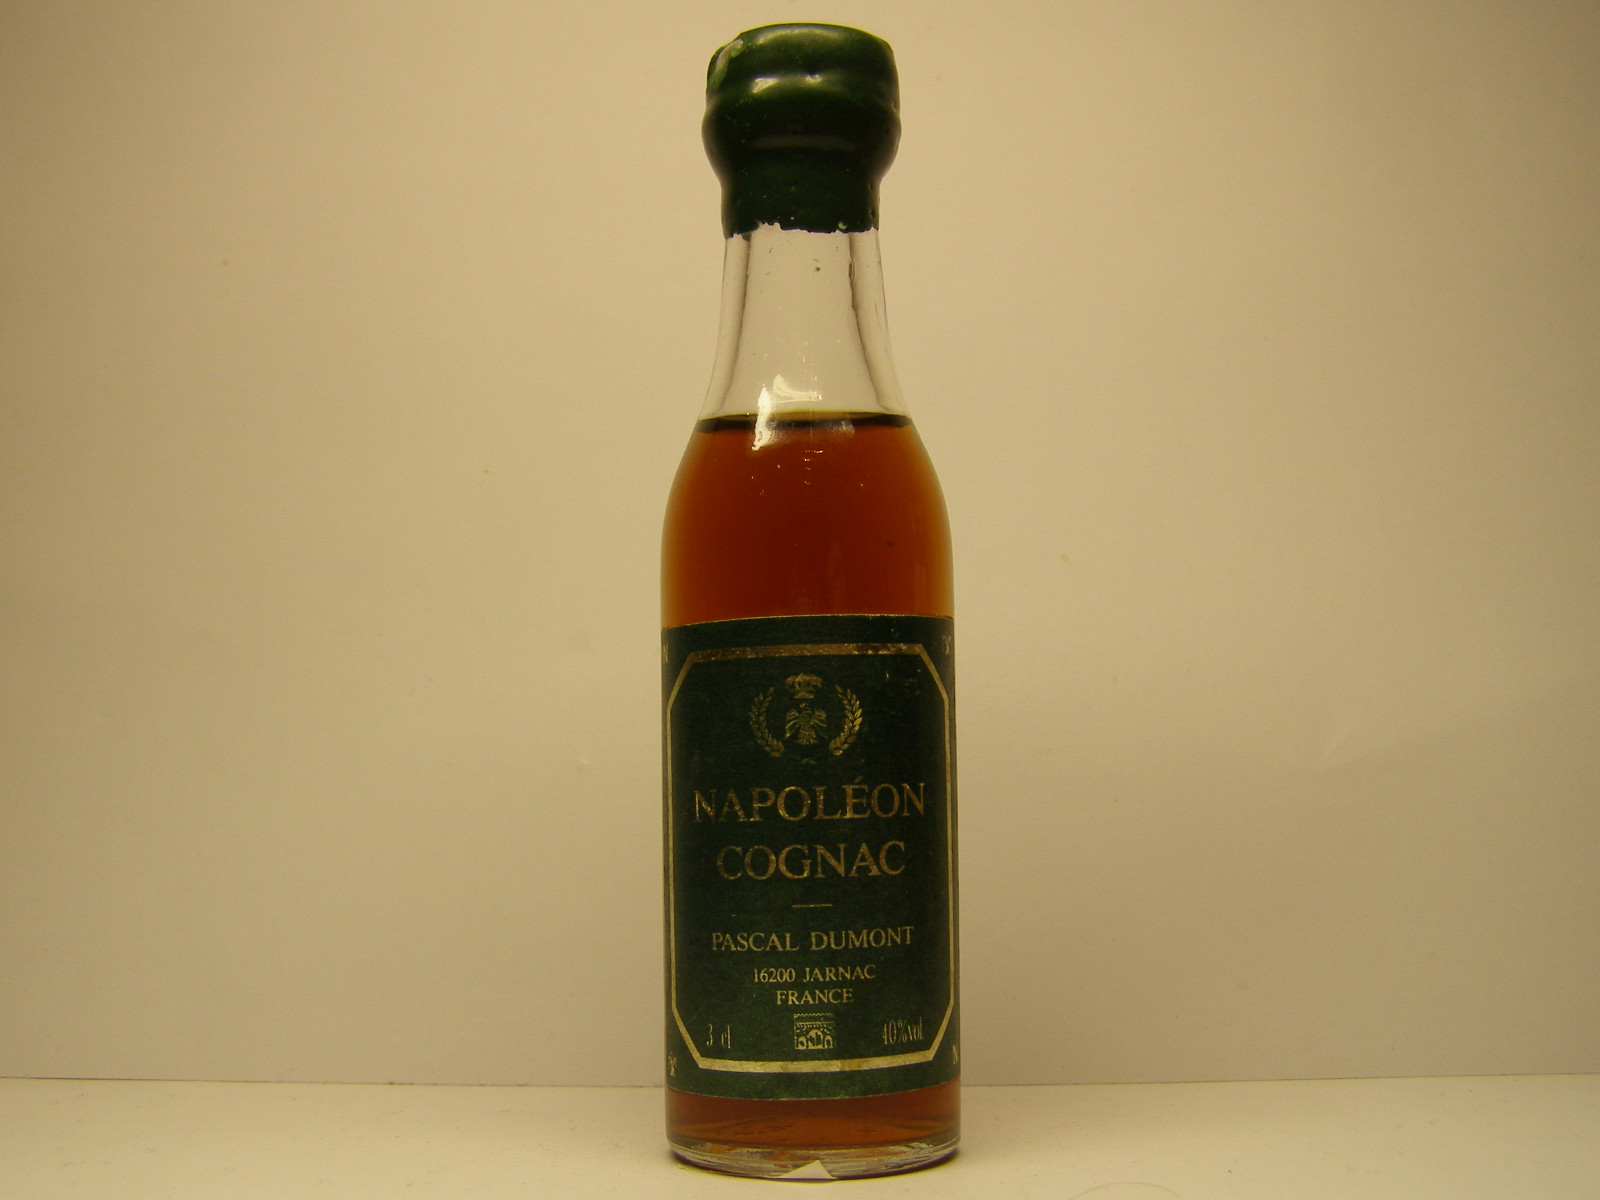 PASCAL DUMONT NAPOLEON Cognac